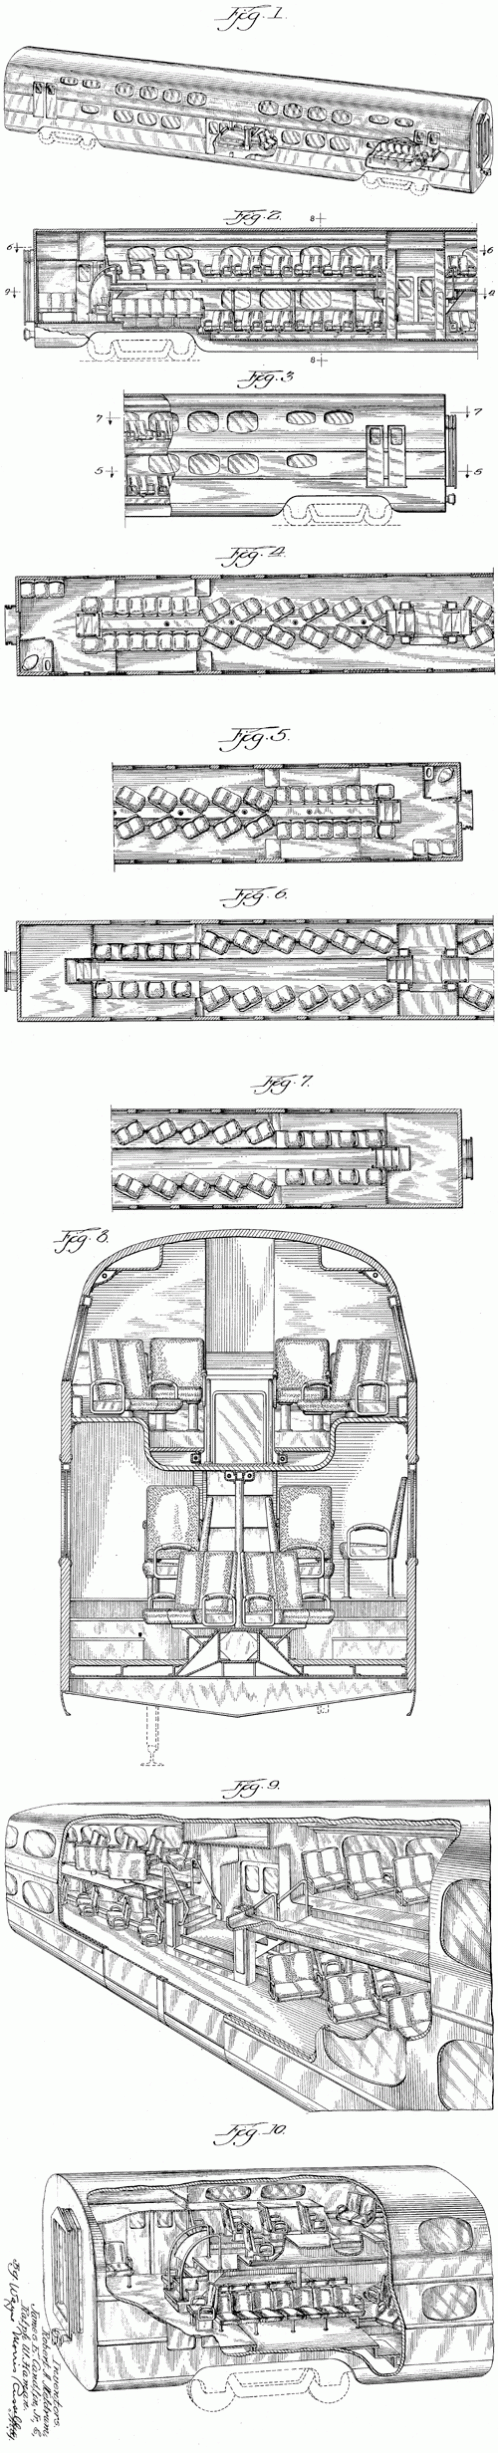 Double Deck Pullman Railway Car